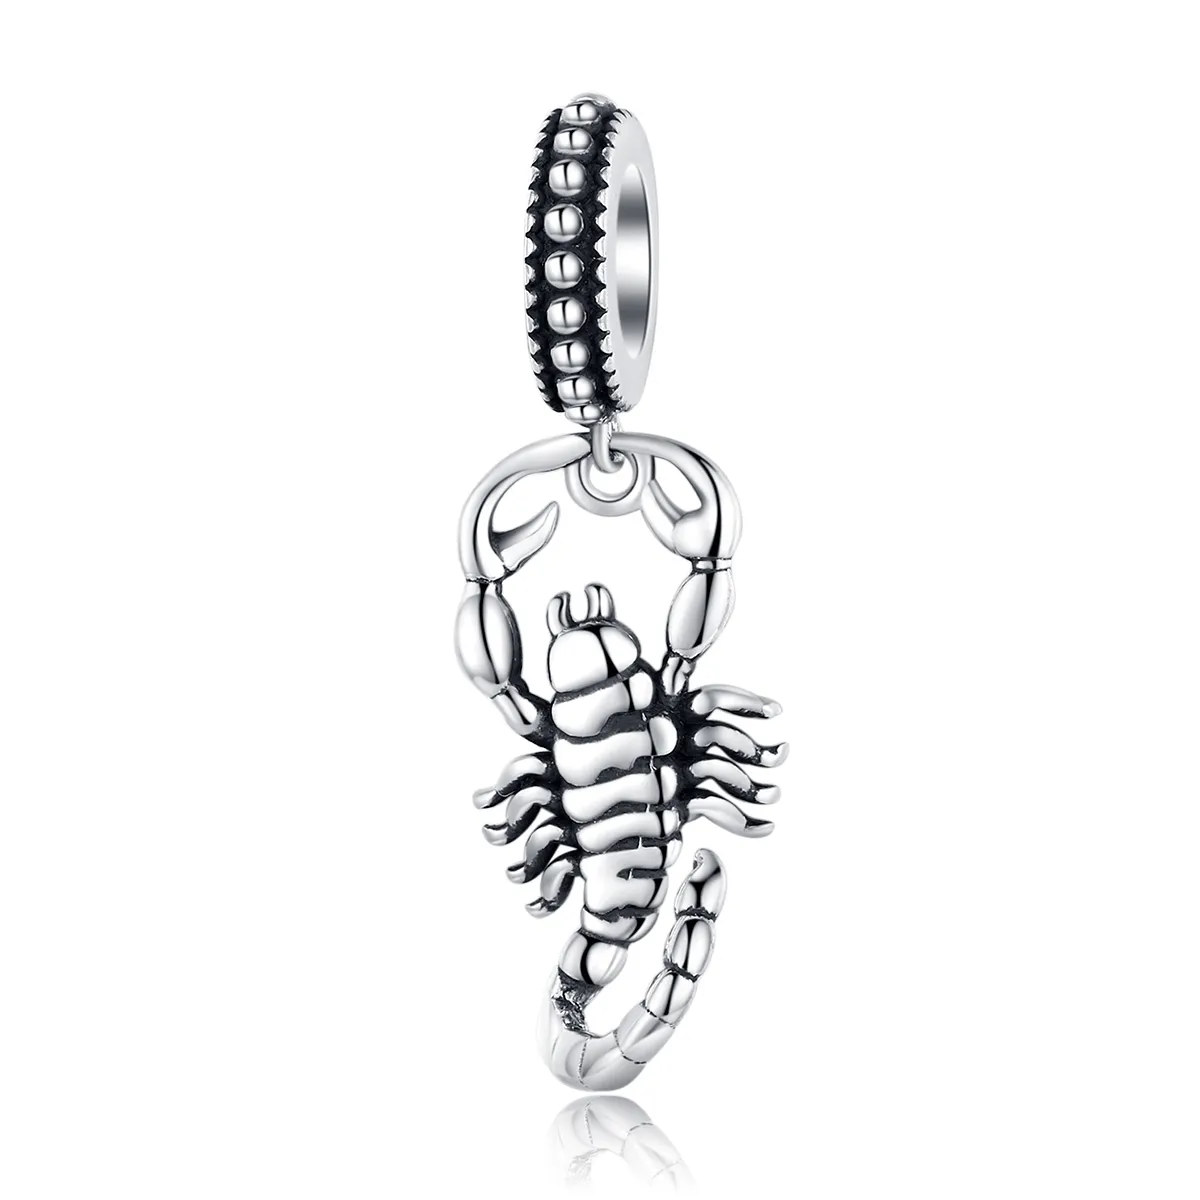 Talisman pandantiv Tip Pandora cu Scorpionul din argint - SCC1329